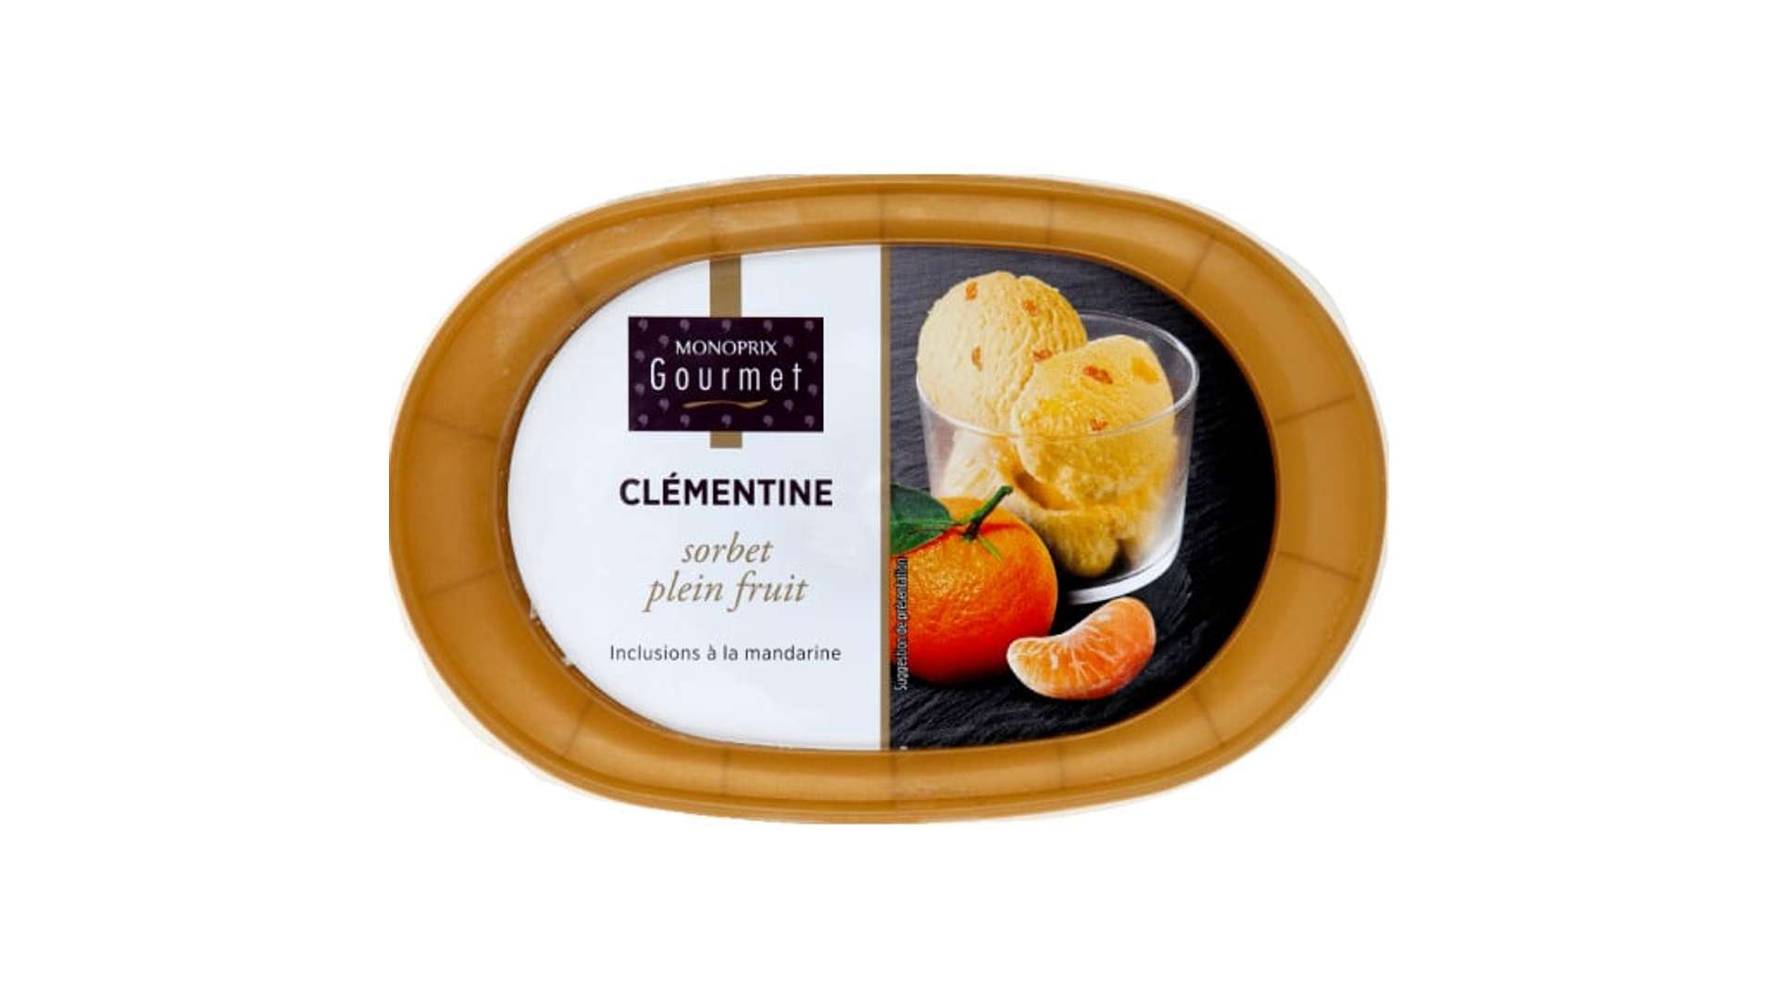 Monoprix Gourmet - Sorbet plein fruit clémentine inclusions à la mandarine (orange)